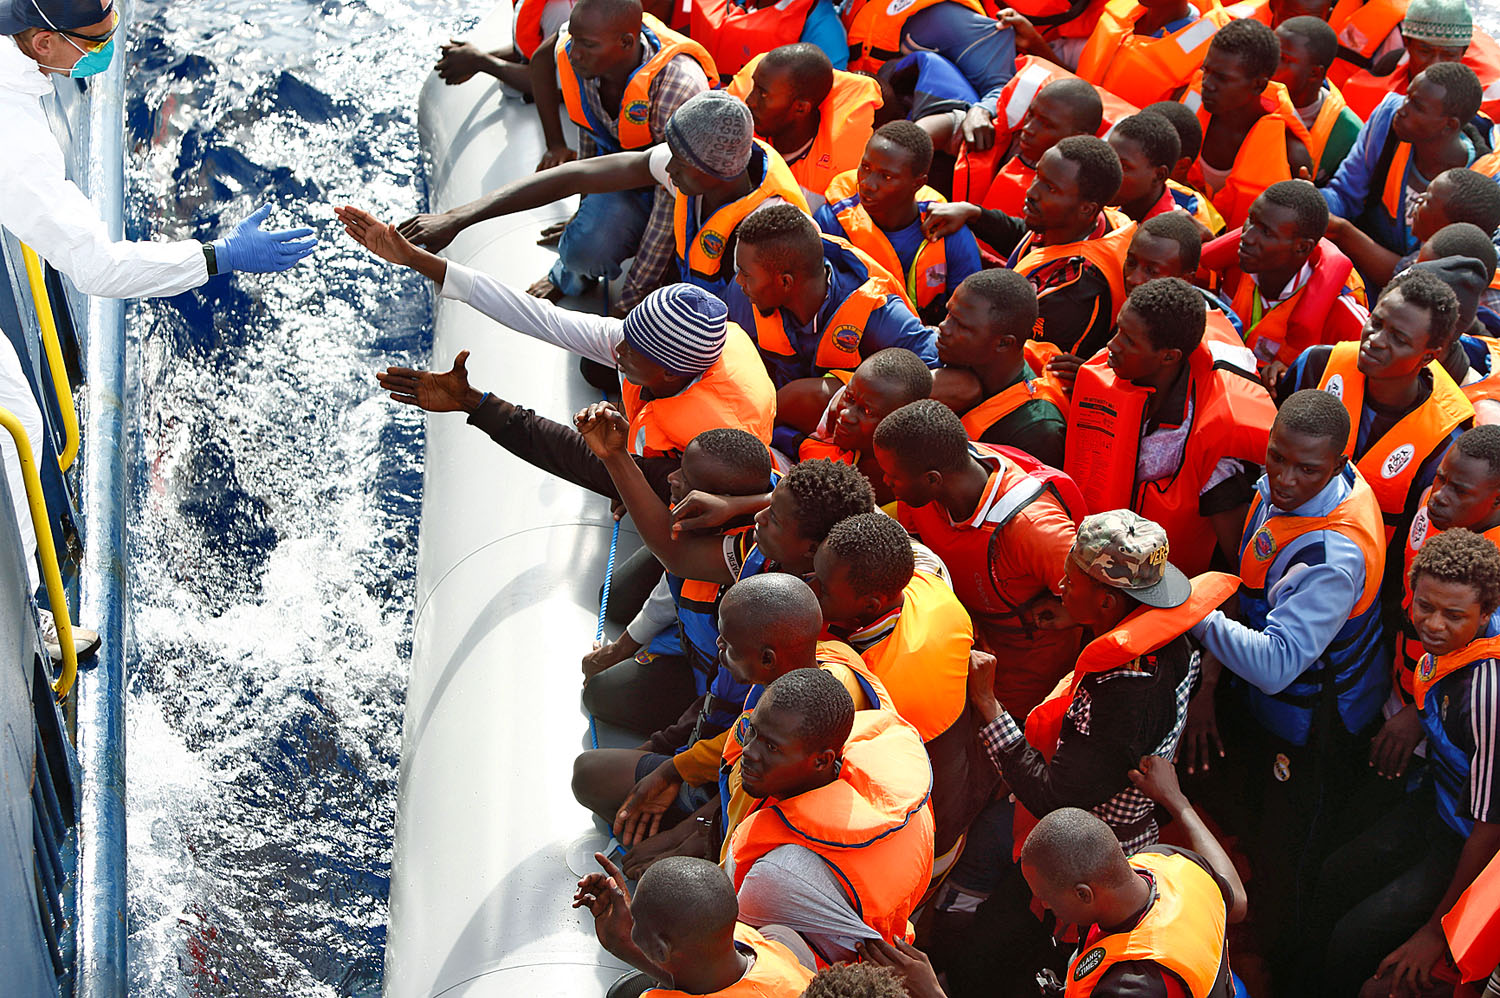 Segítő kezekre várva. Afrikai menekültek a líbiai partok közelében